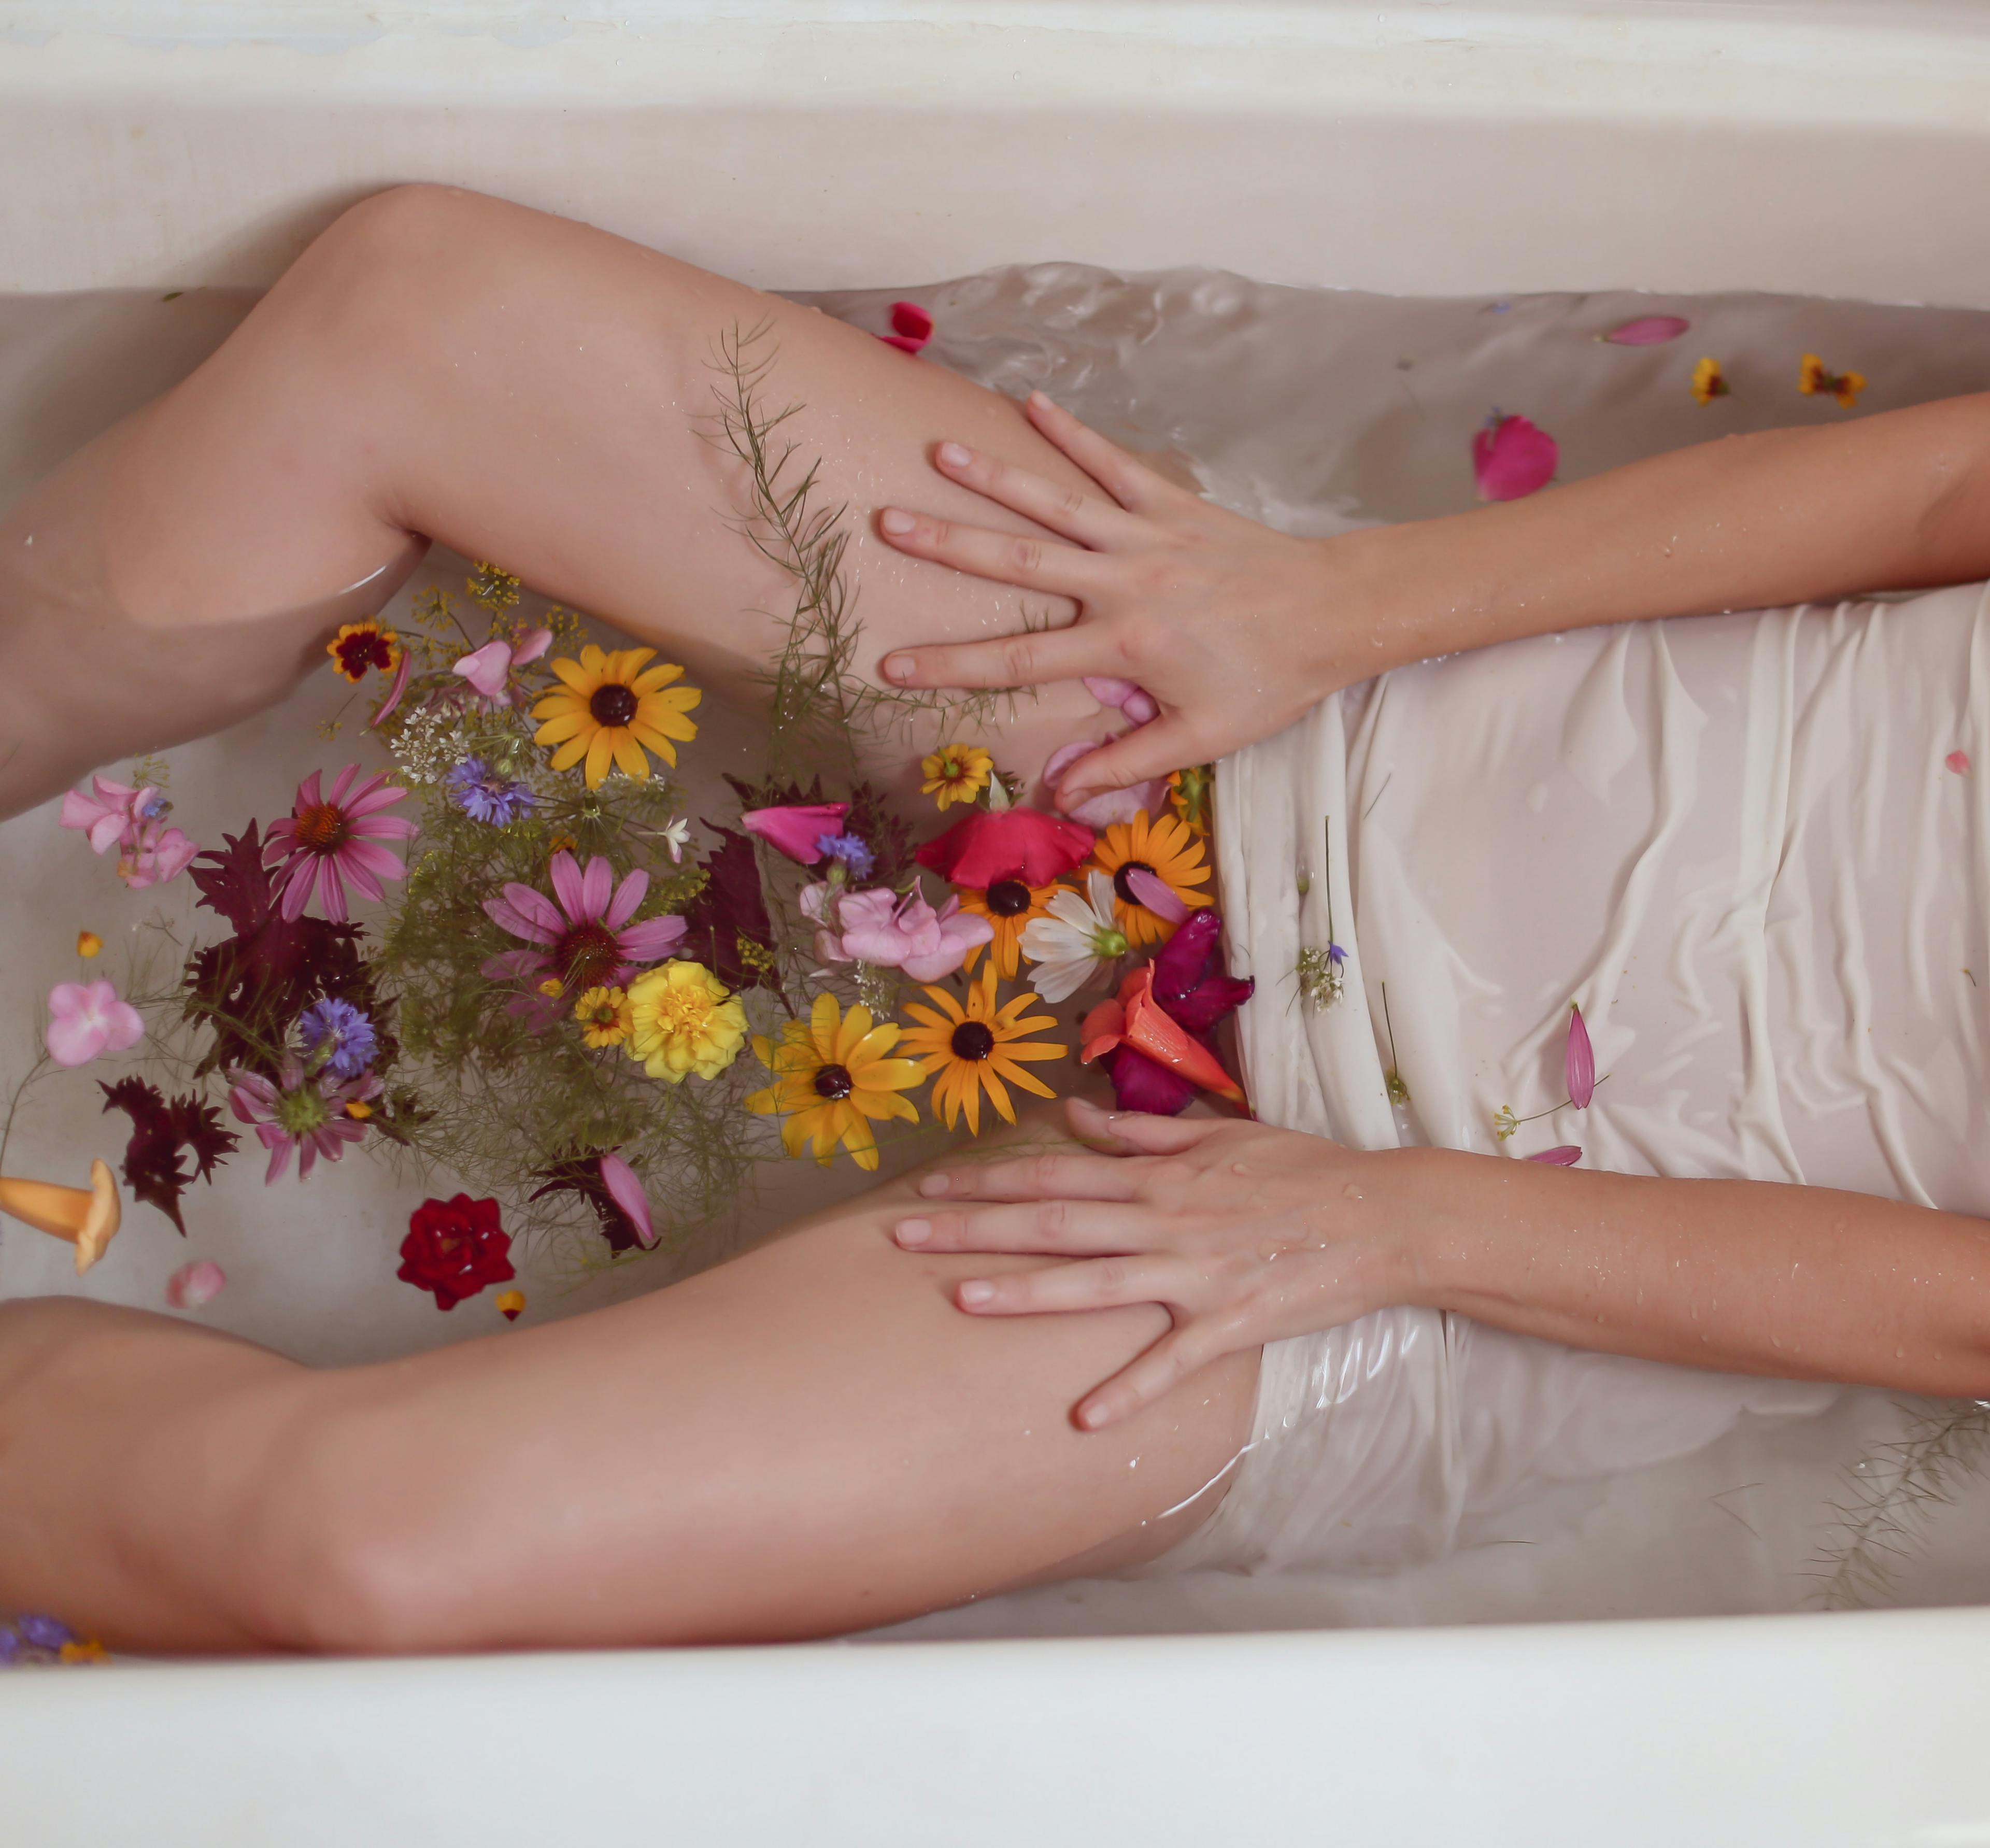 Vrouw in bad met diverse bloemen